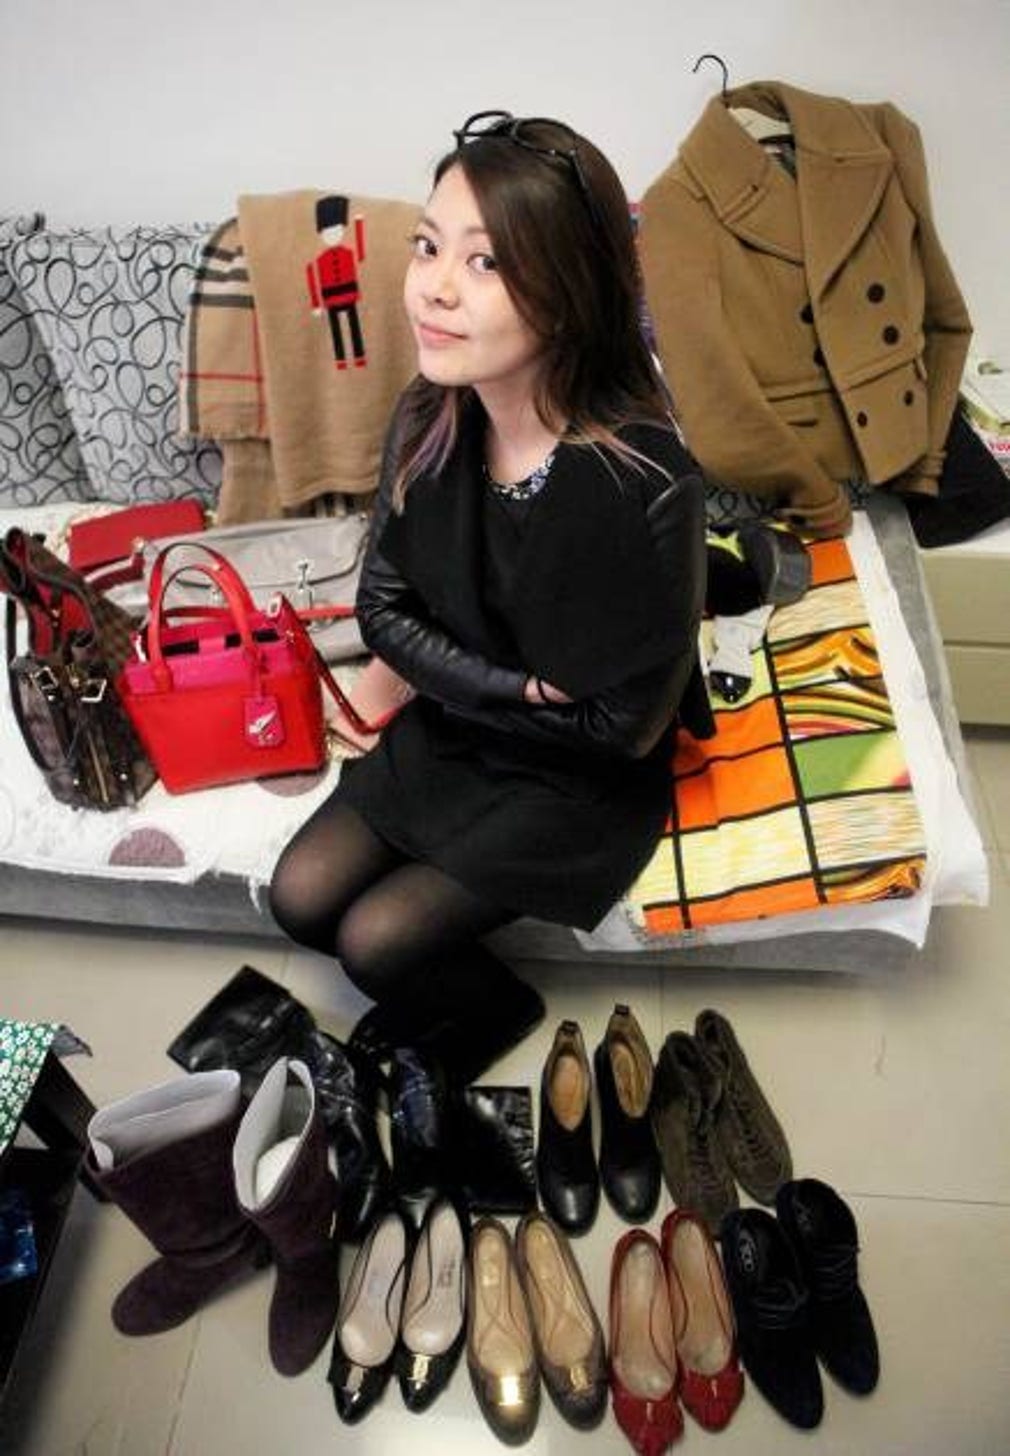 Wang Nan med en bråkdel av sina märkesskor, väskor och kläder.Modefotografering i North Village, ett av Pekings nya shoppingområden. Hit söker sig många märkesbutiker.